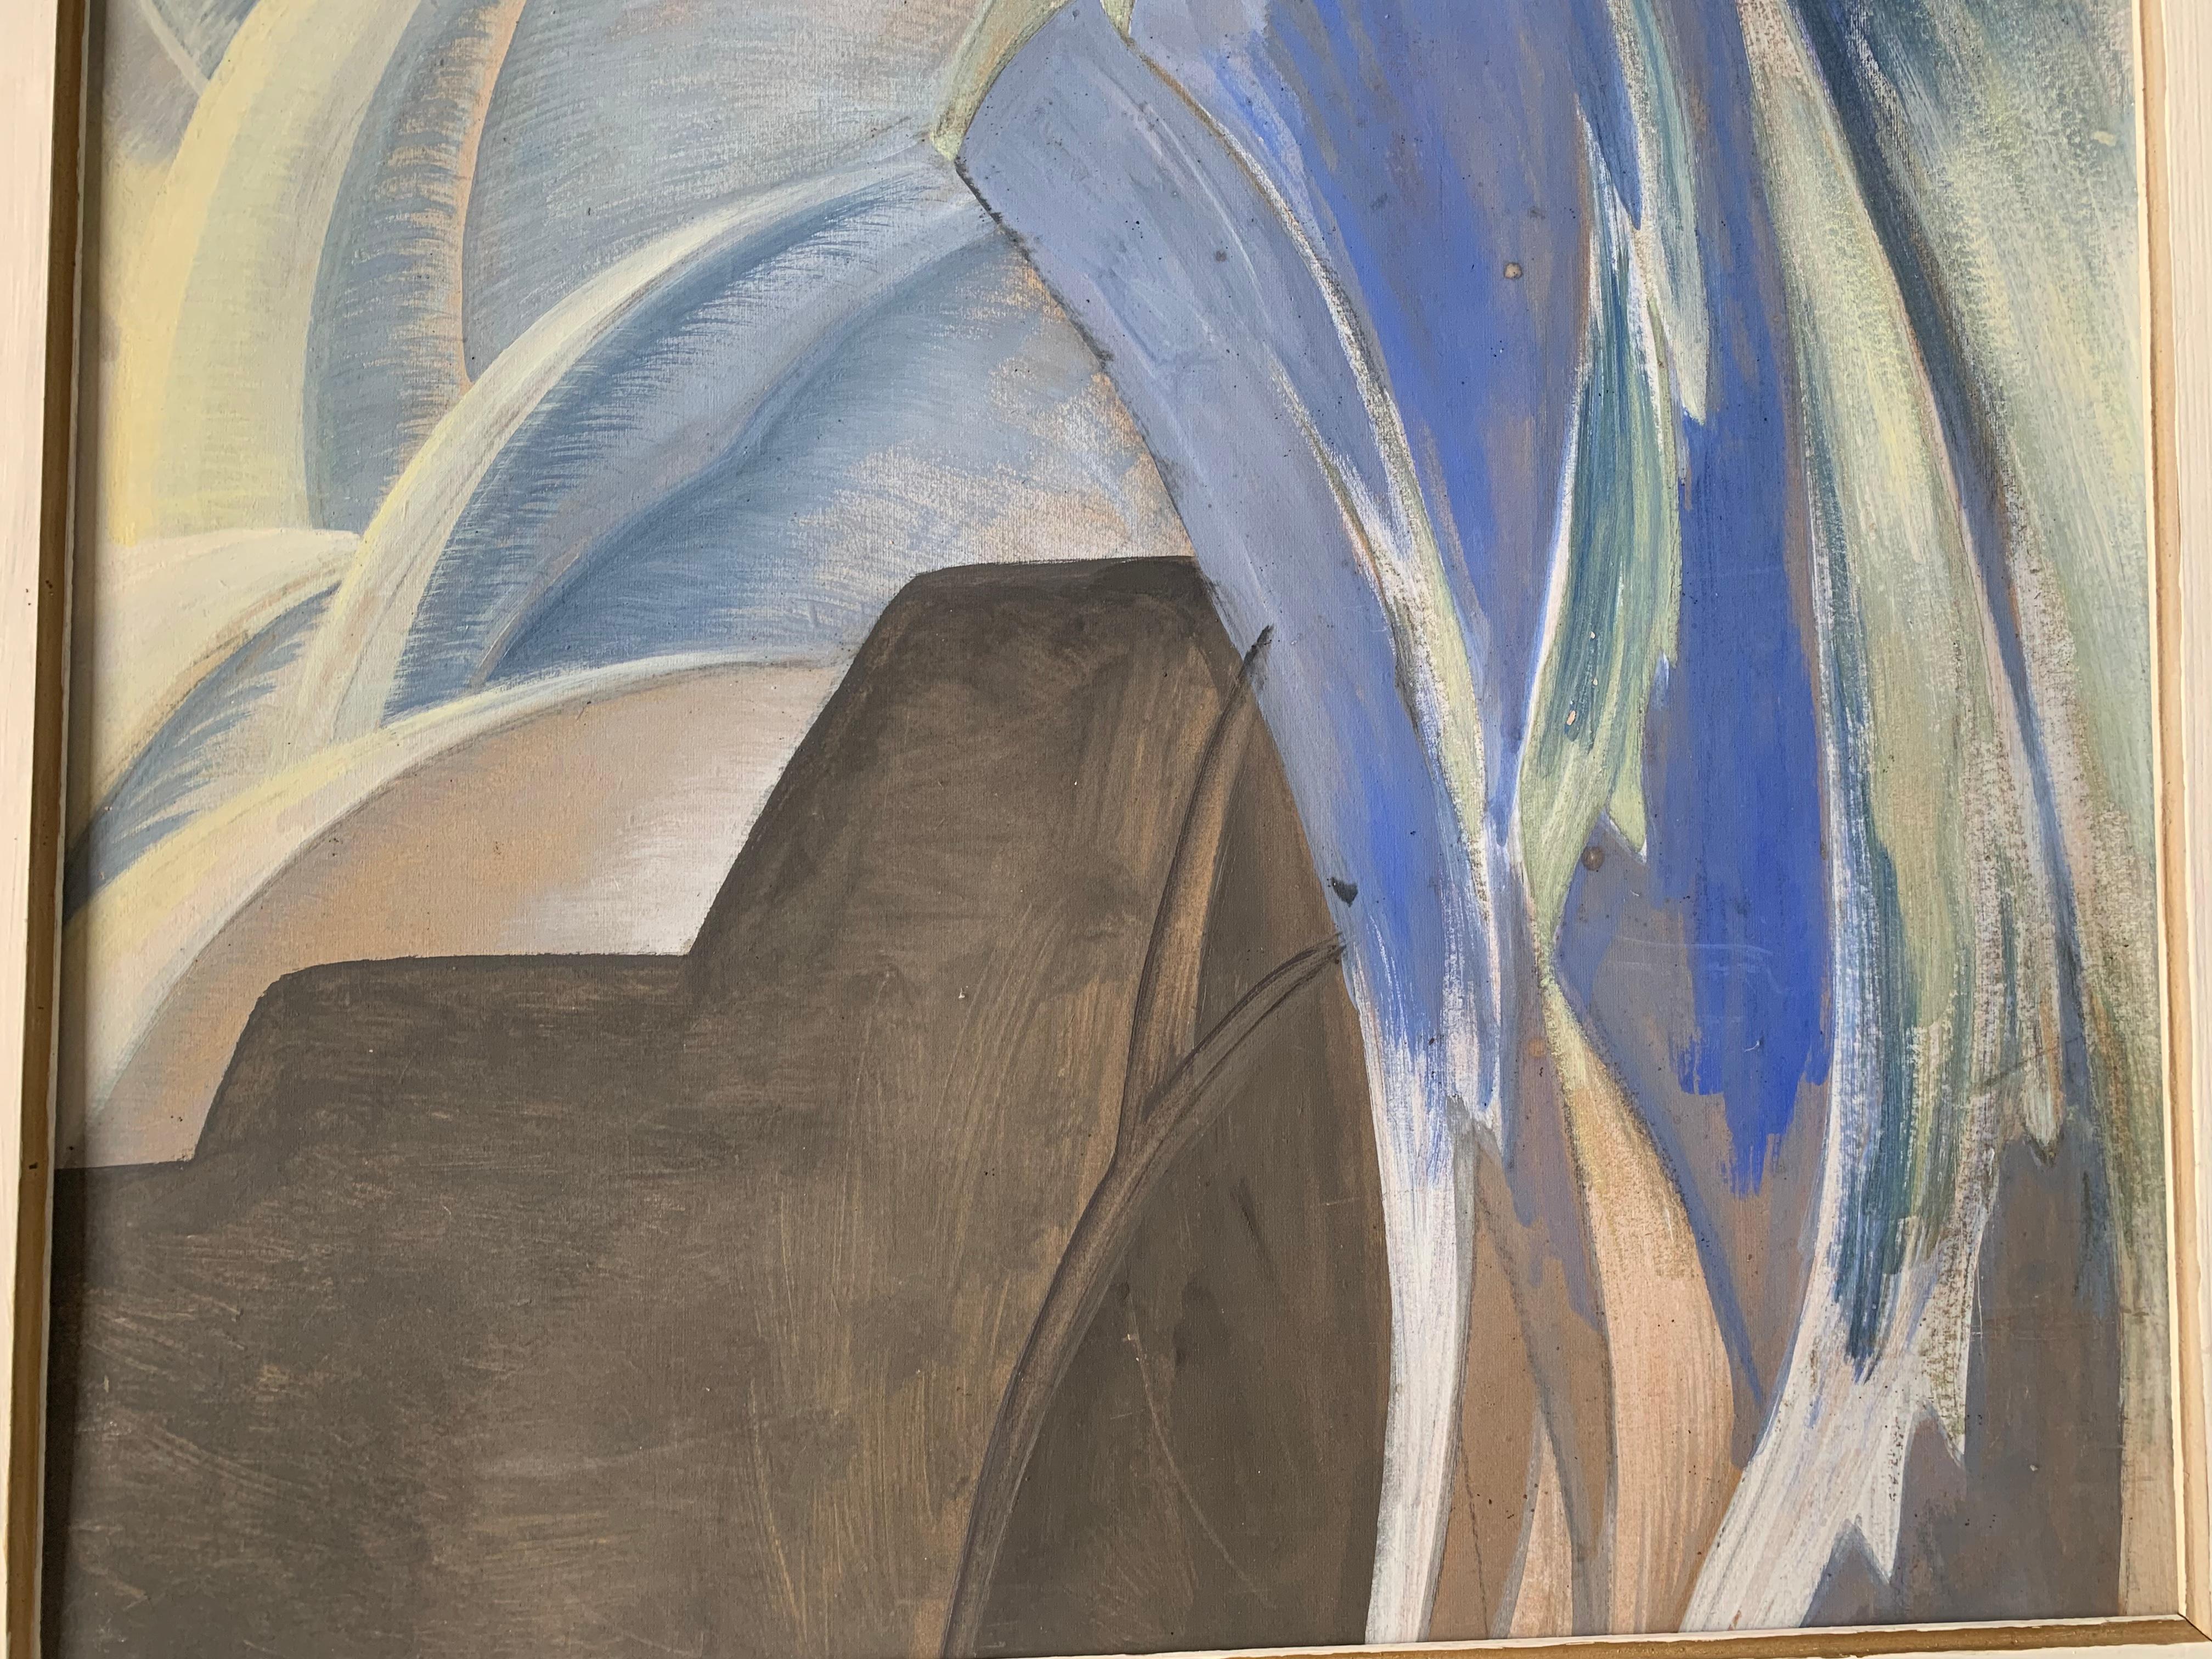 Szene eines Ritters auf einem Schiff mit erhobenem Schwert.
Emmanuel Cocard, Lyon, 1929.

Gemalt in Gouache auf dickem Karton, derzeit durch eine Holzplatte geschützt.
Der Autor des Gemäldes schafft eine märchenhafte Atmosphäre, indem er prächtige